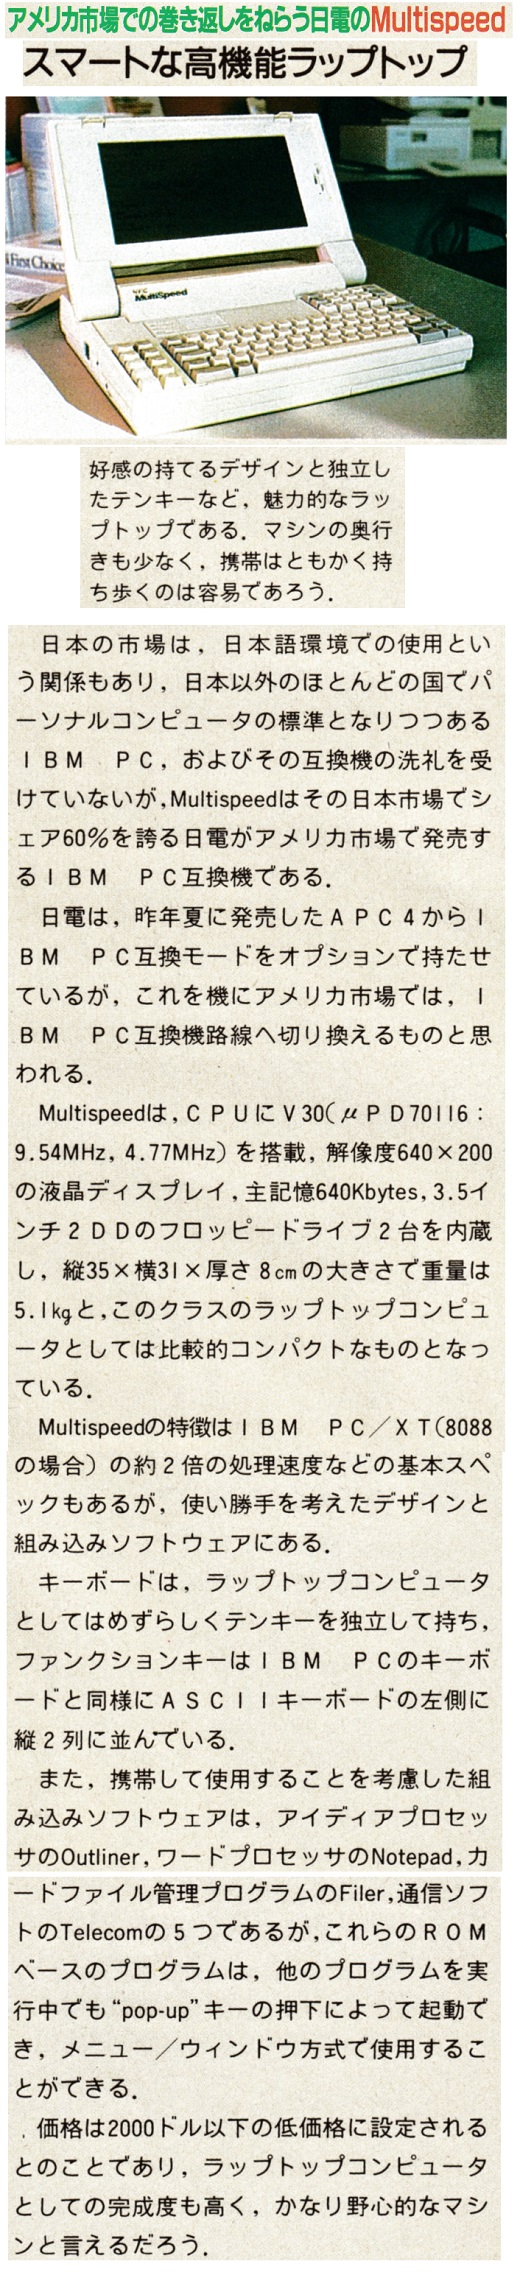 ASCII1987(03)c03_日電Multispeed_W520.jpg